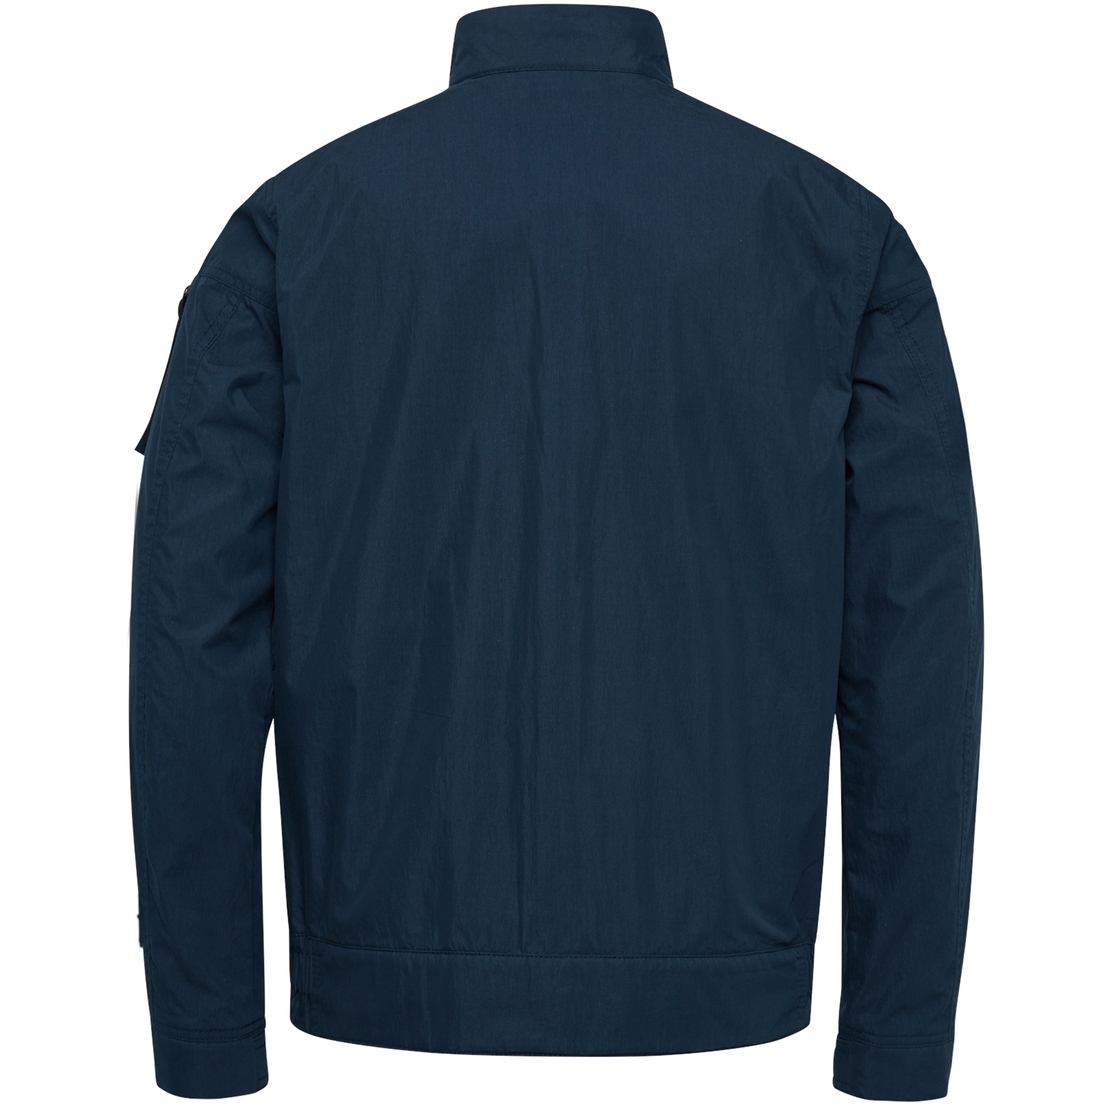 PJA2302104 Short jacket SKYCAR 3.0 Mech Cotto